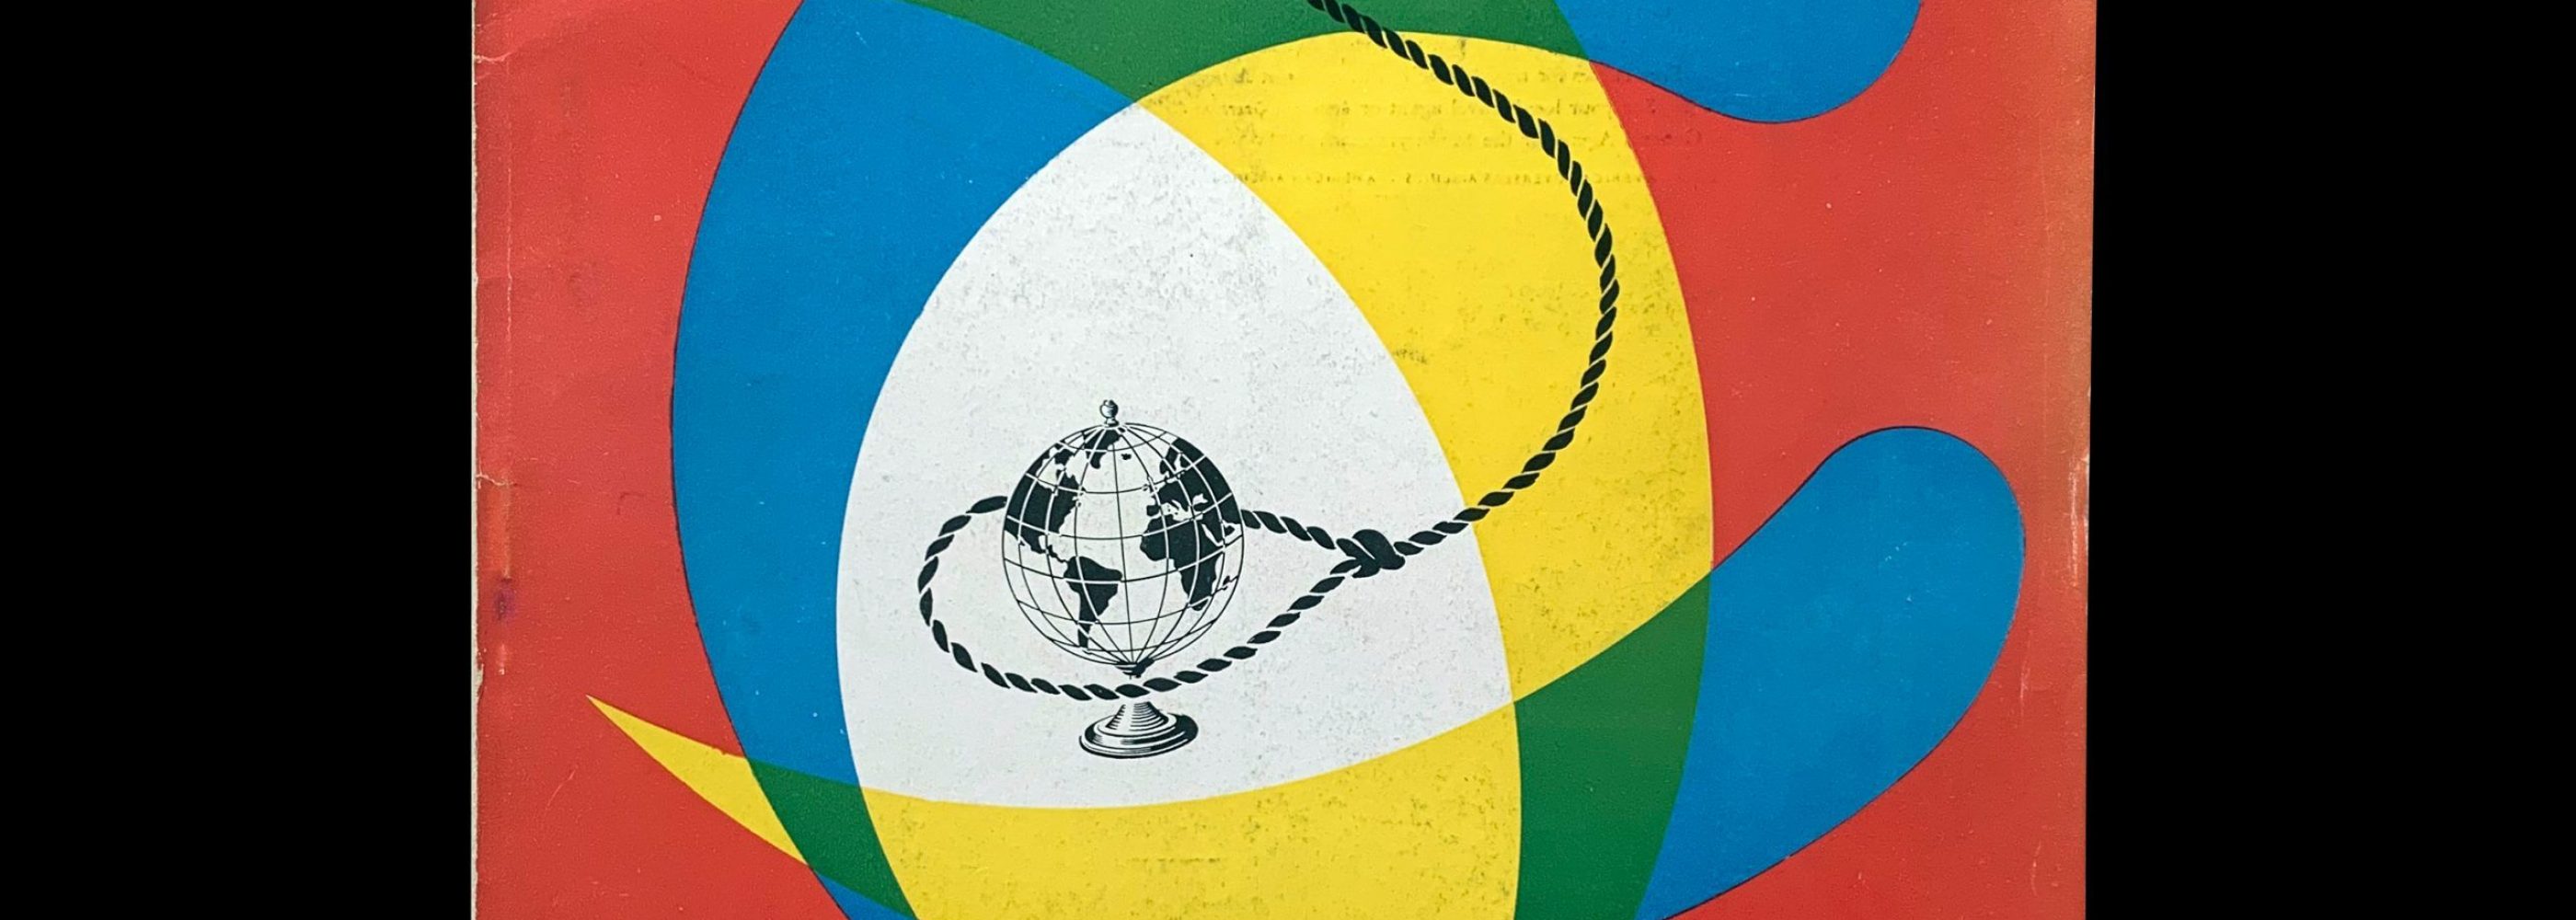 Publimondial 30, 1950, cover design by Pierre Fix-Masseau